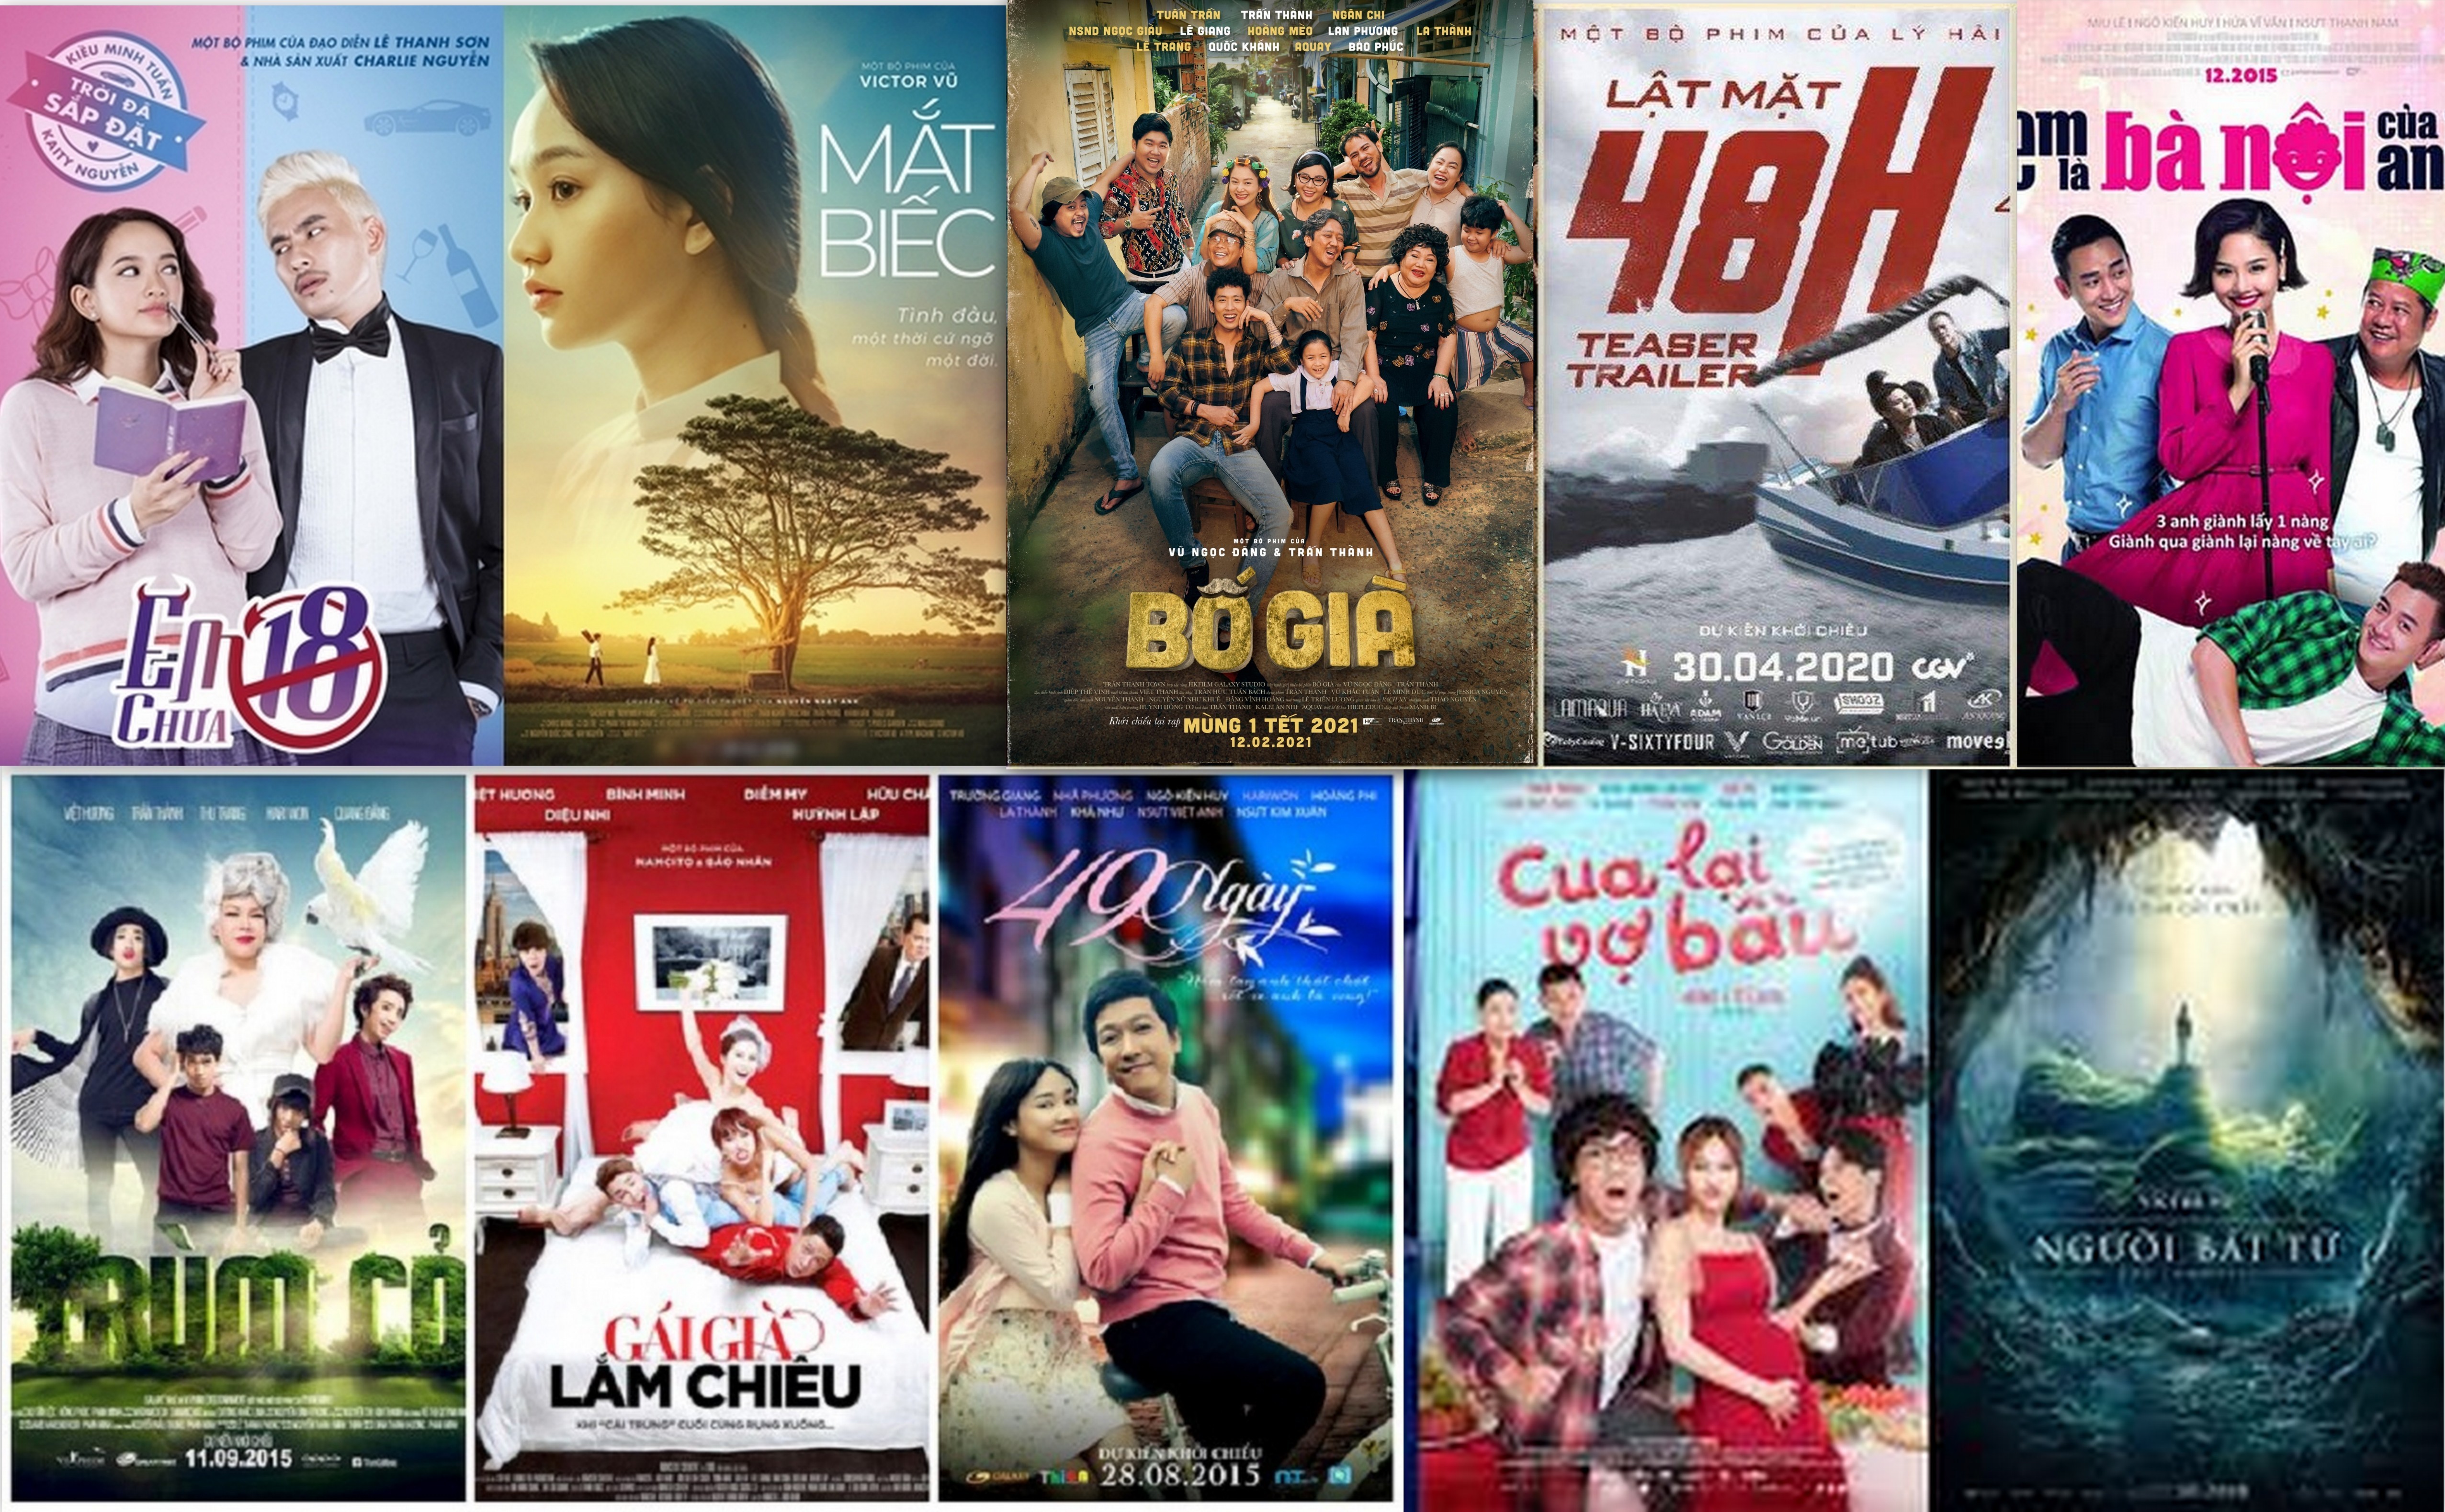 Với công nghiệp điện ảnh ngày càng phát triển, những bộ phim Việt Nam đang dần được khán giả trên toàn thế giới đón nhận. Quý vị sẽ không thể bỏ qua hình ảnh đẹp mê hồn và câu chuyện đầy cảm xúc của những tác phẩm điện ảnh đình đám trong nước.